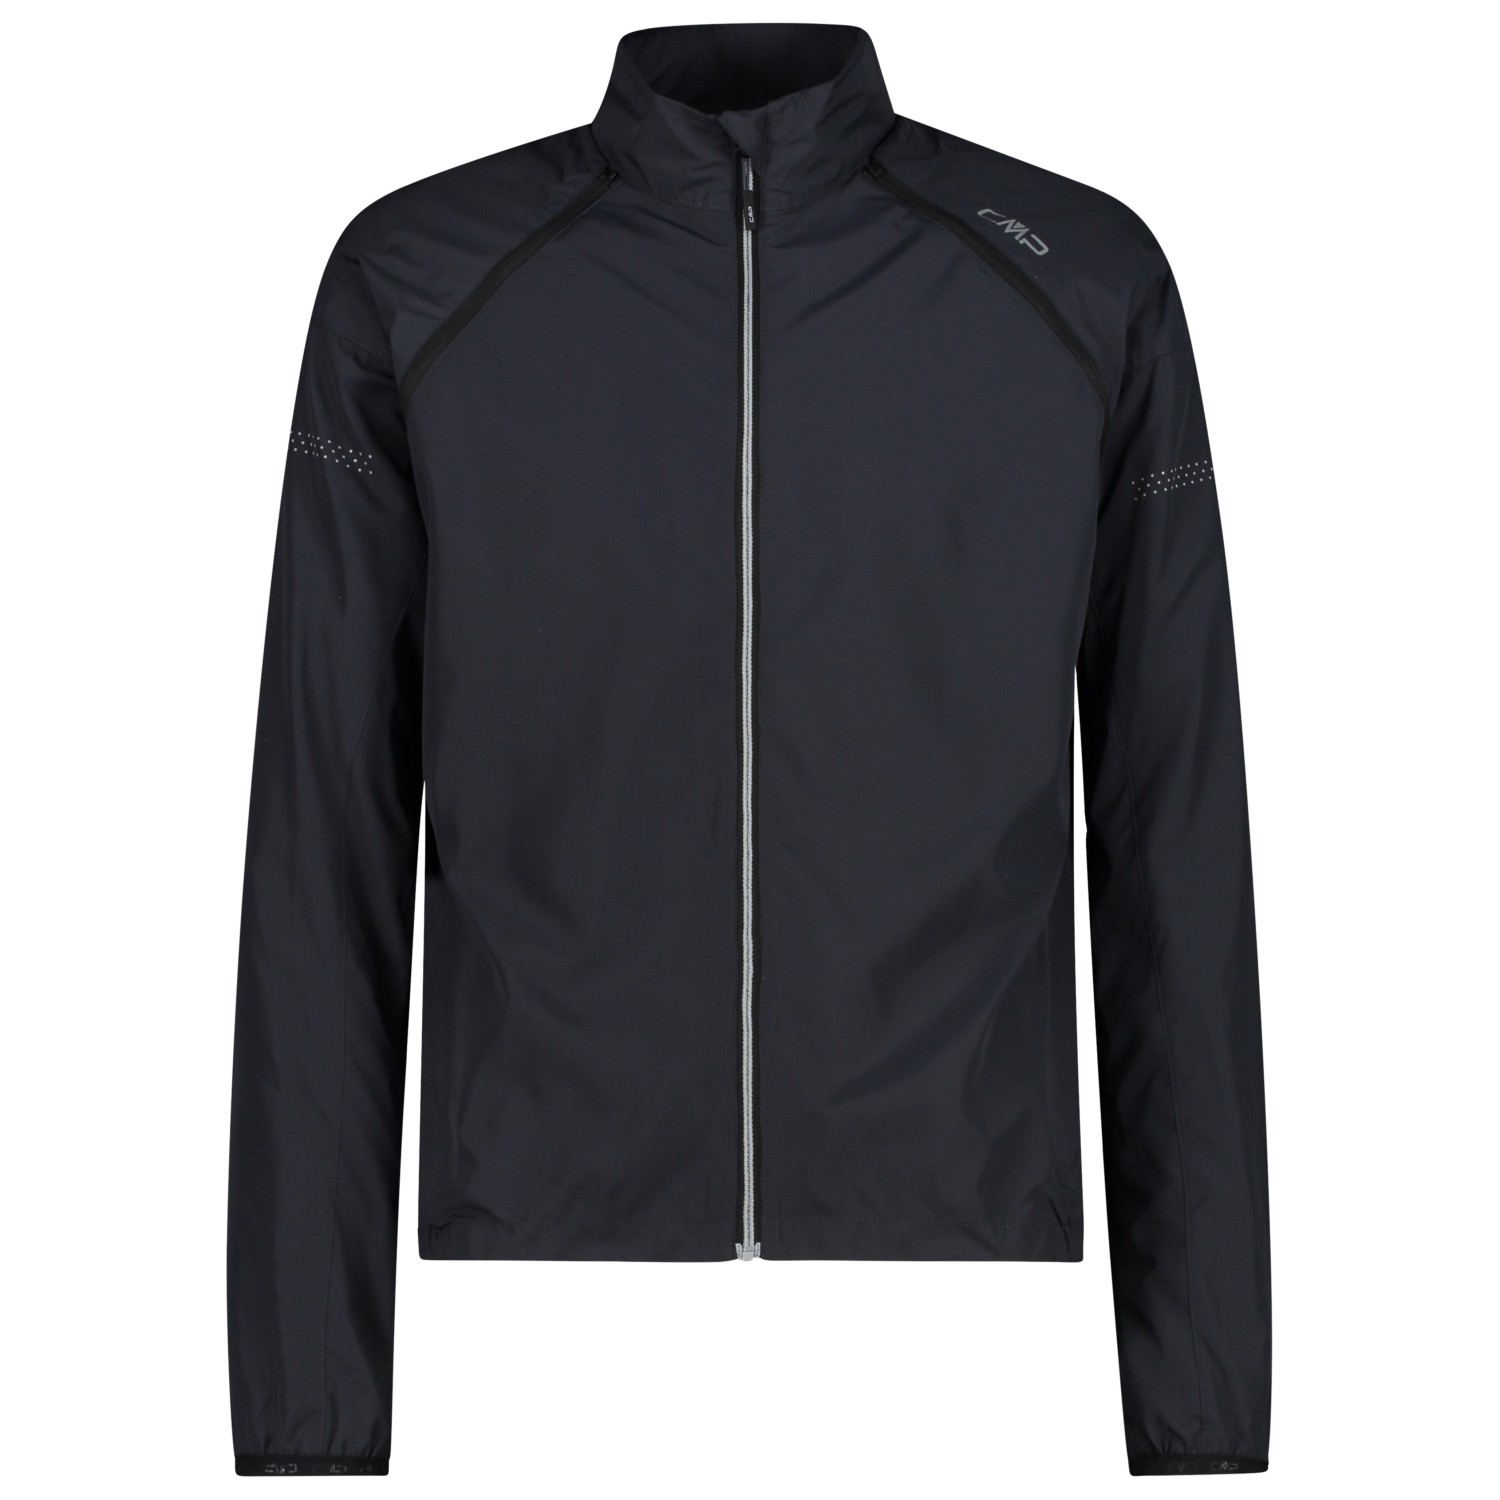 Велосипедная куртка Cmp Jacket With Detachable Sleeves, цвет Antracite